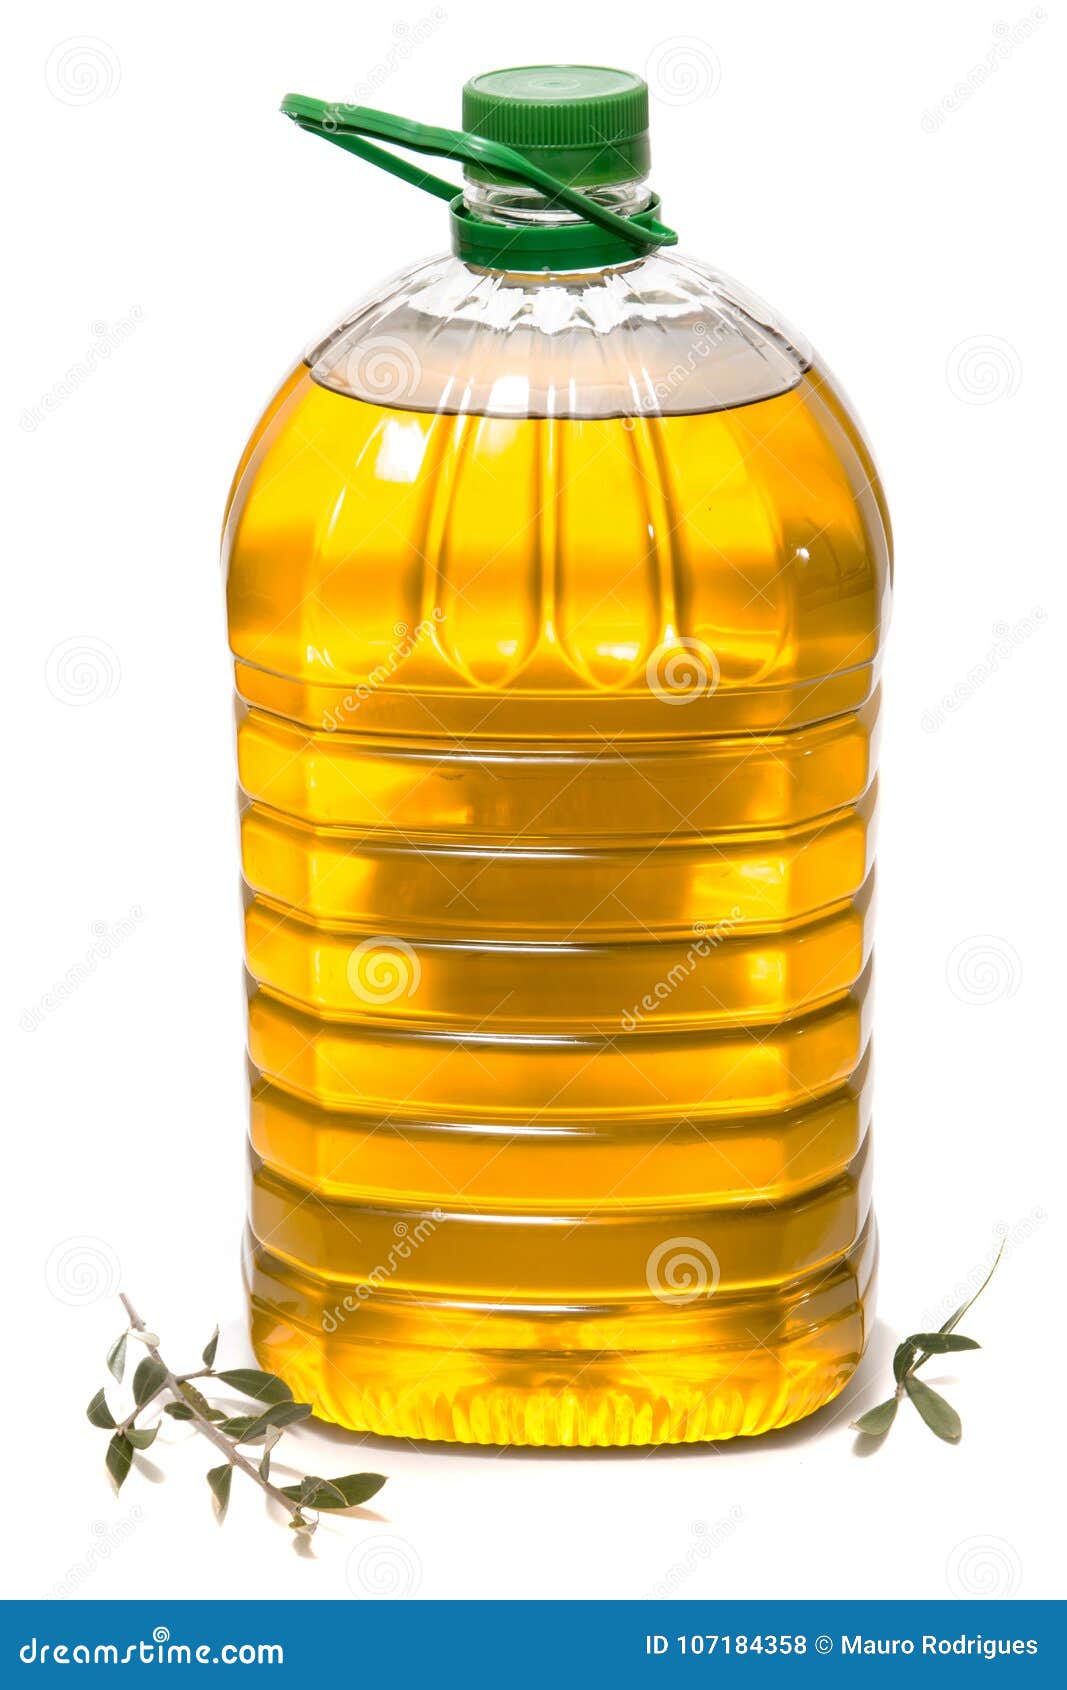 five litre of olive oil bottle